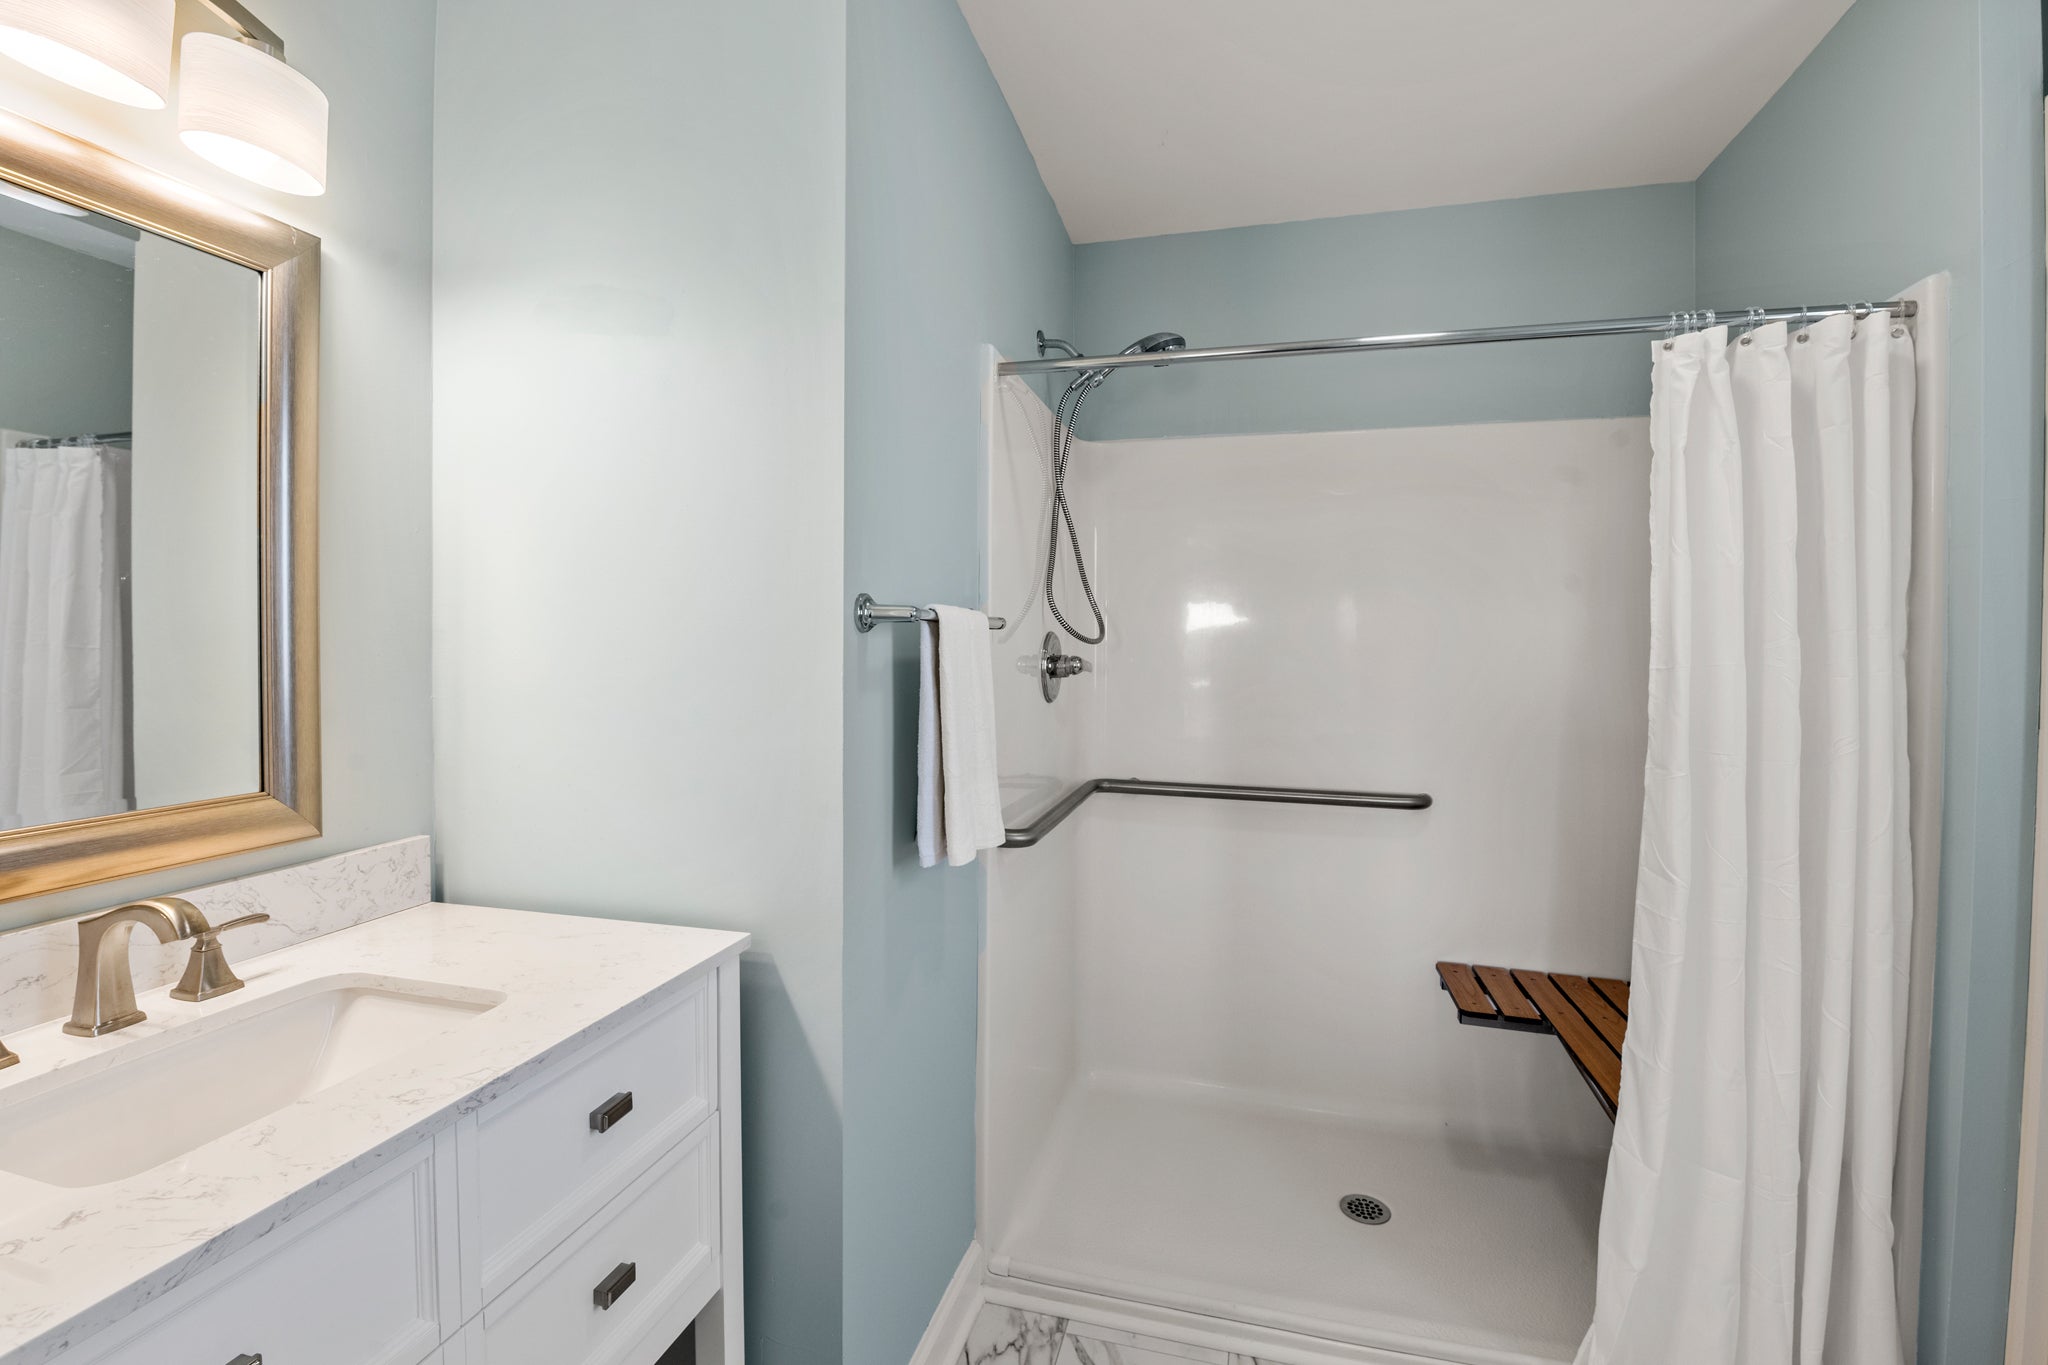 KDS0201: Woodshed l Mid Level Bedroom 2 Private Bath